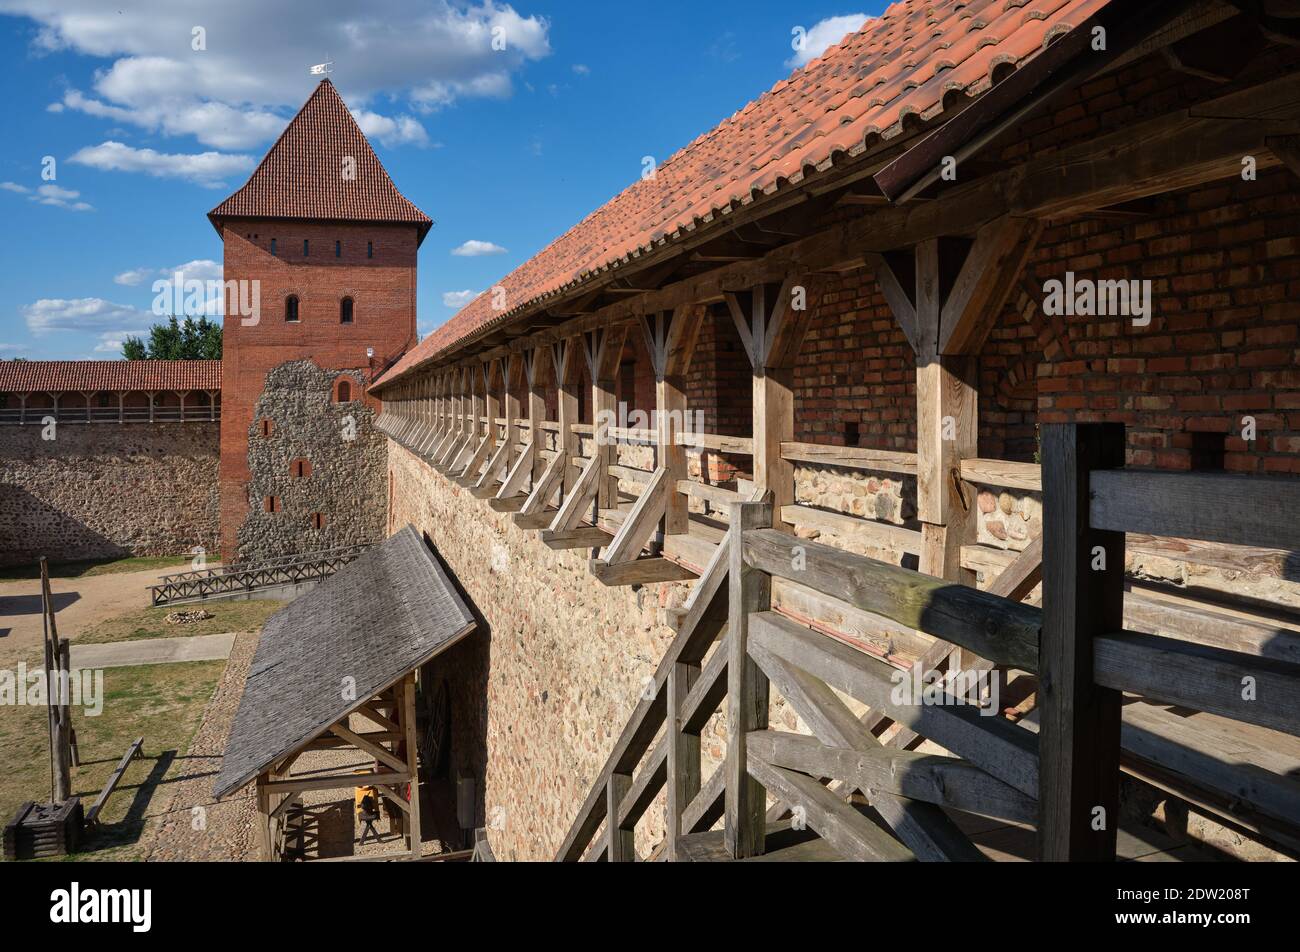 Site touristique biélorusse - ancien château rétro de Lida, région de Grodno, Biélorussie. Banque D'Images